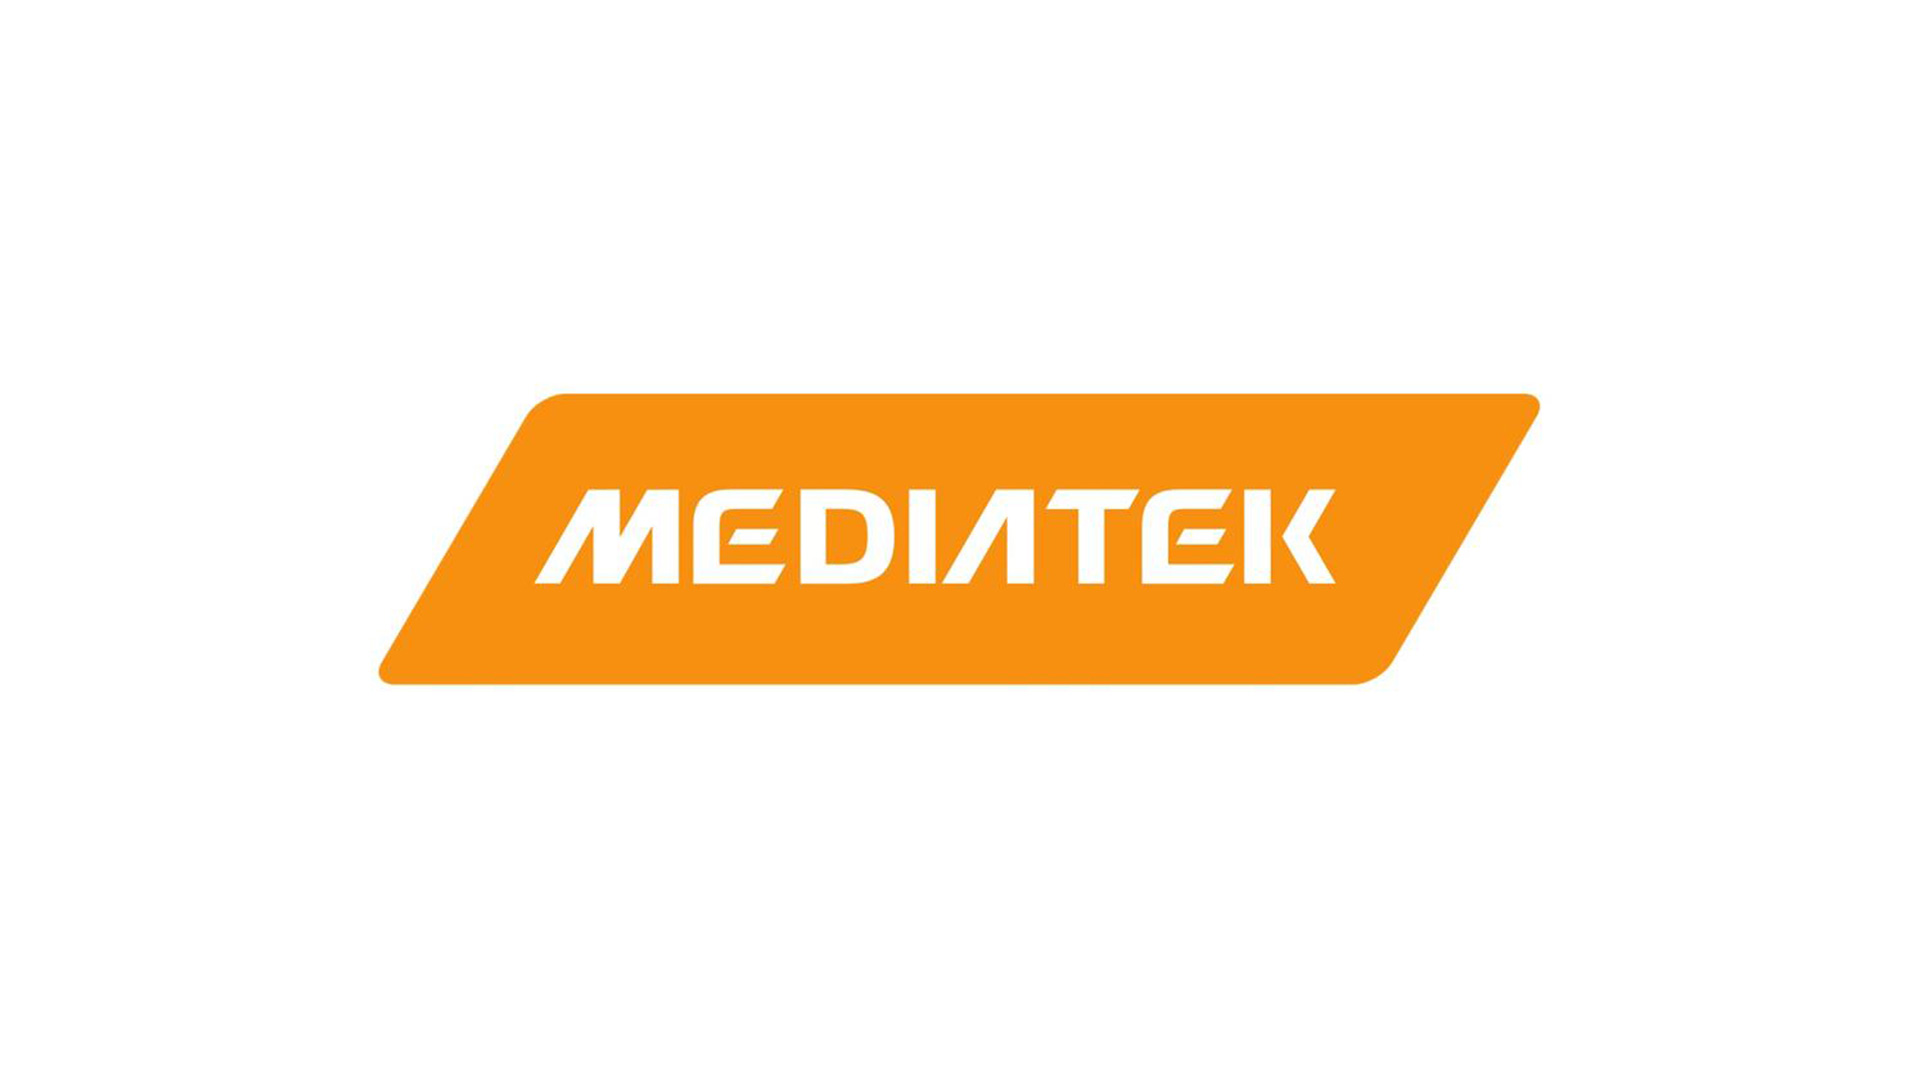 MediaTeklogo/